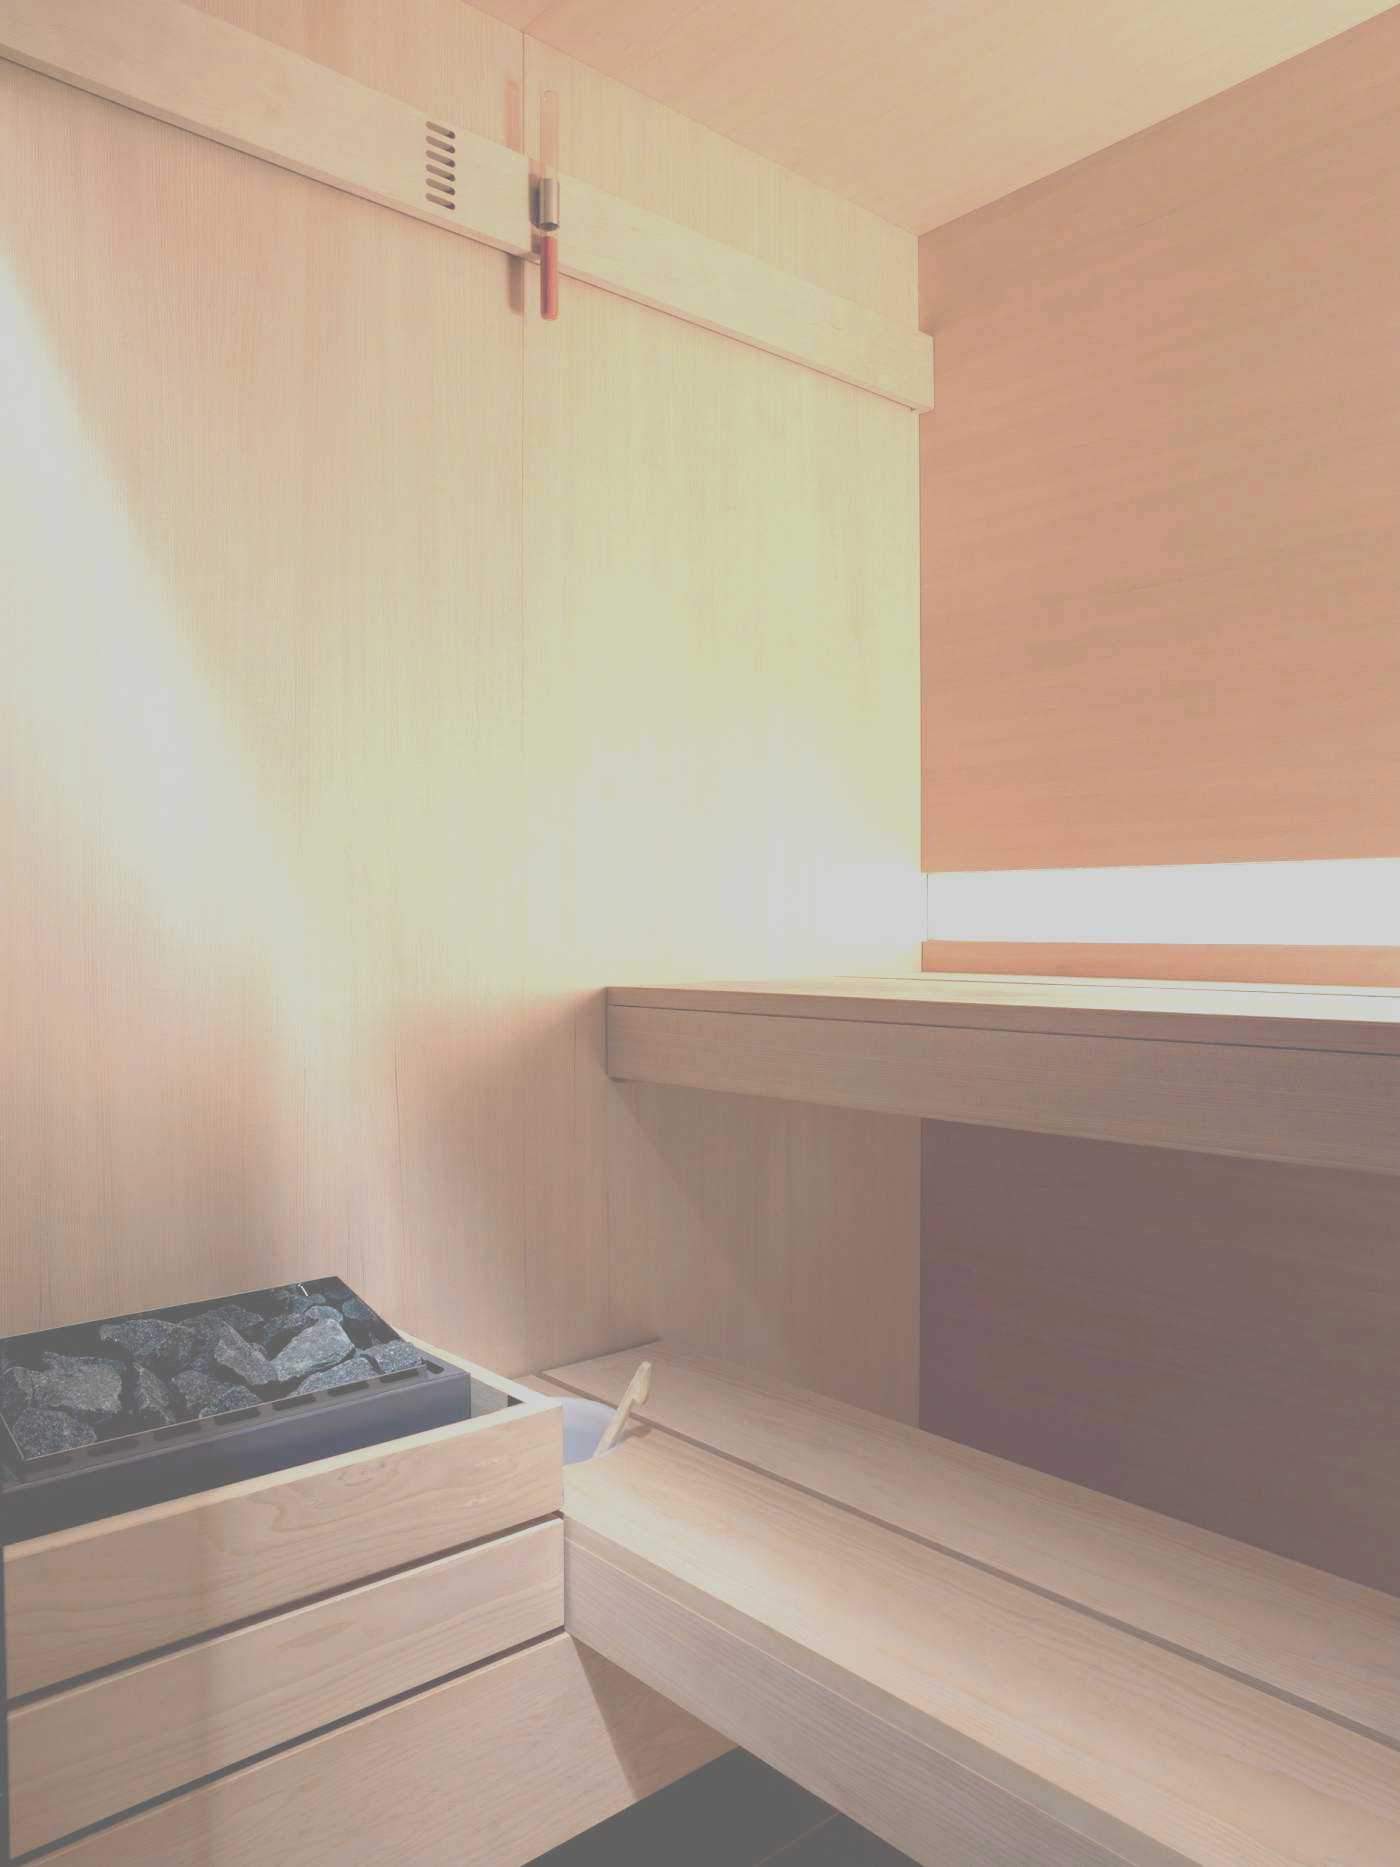 sauna im garten reizend 40 konzepte galerie von garten eden sauna of sauna im garten